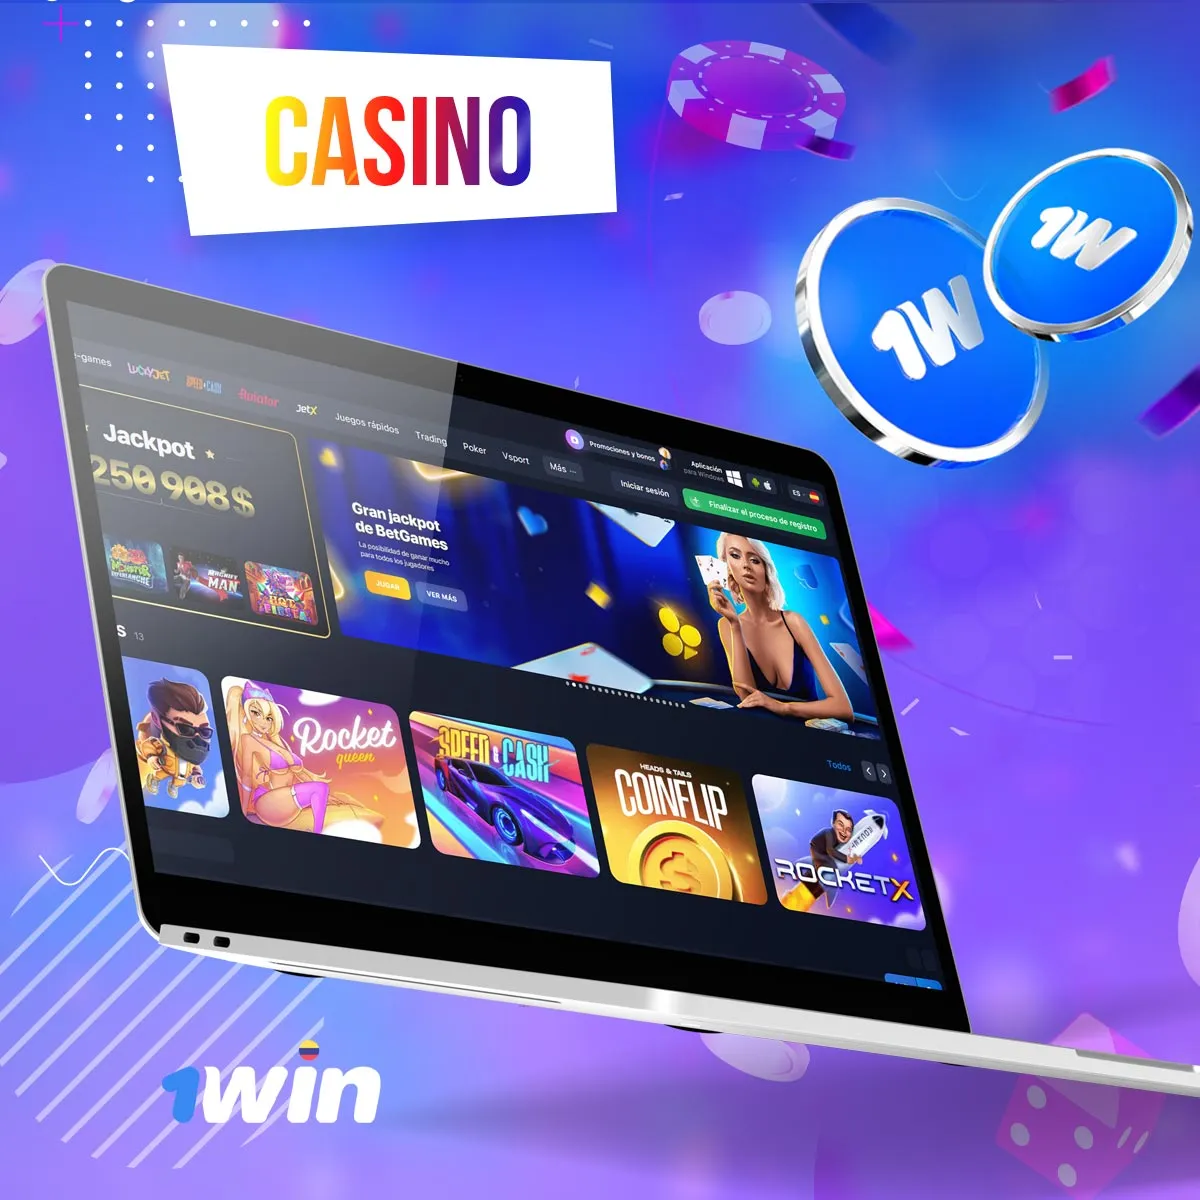 Características principales del casino 1win en Colombia